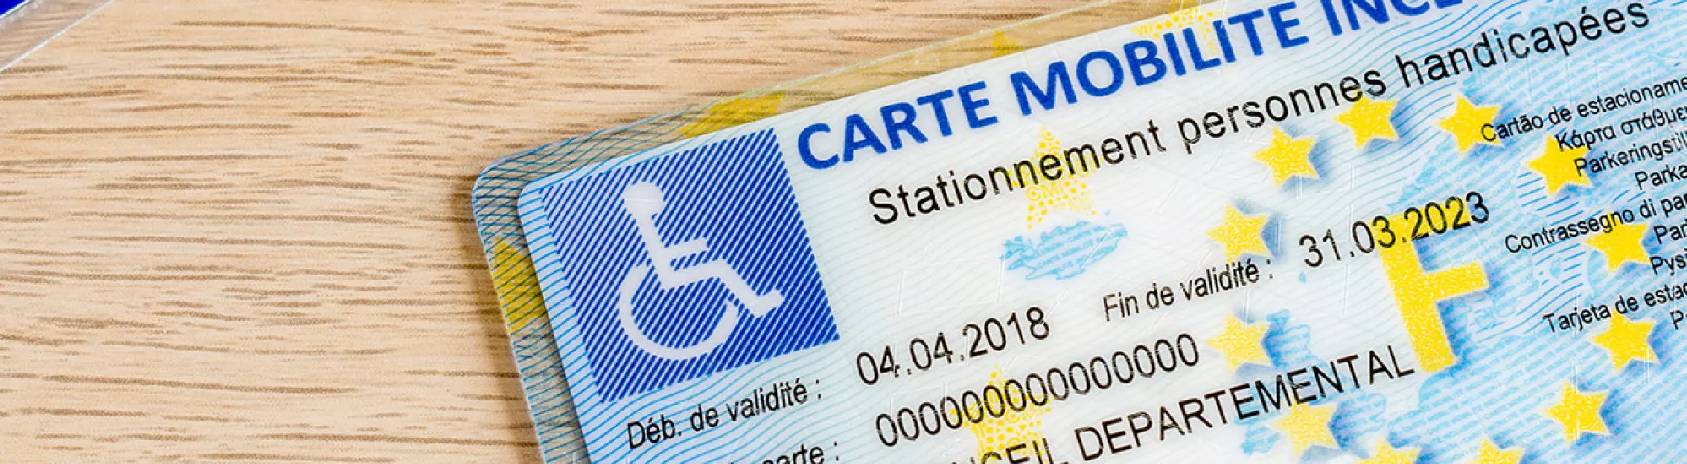 Carte Mobilité Inclusion : tout savoir sur la nouvelle carte stationnement  handicape